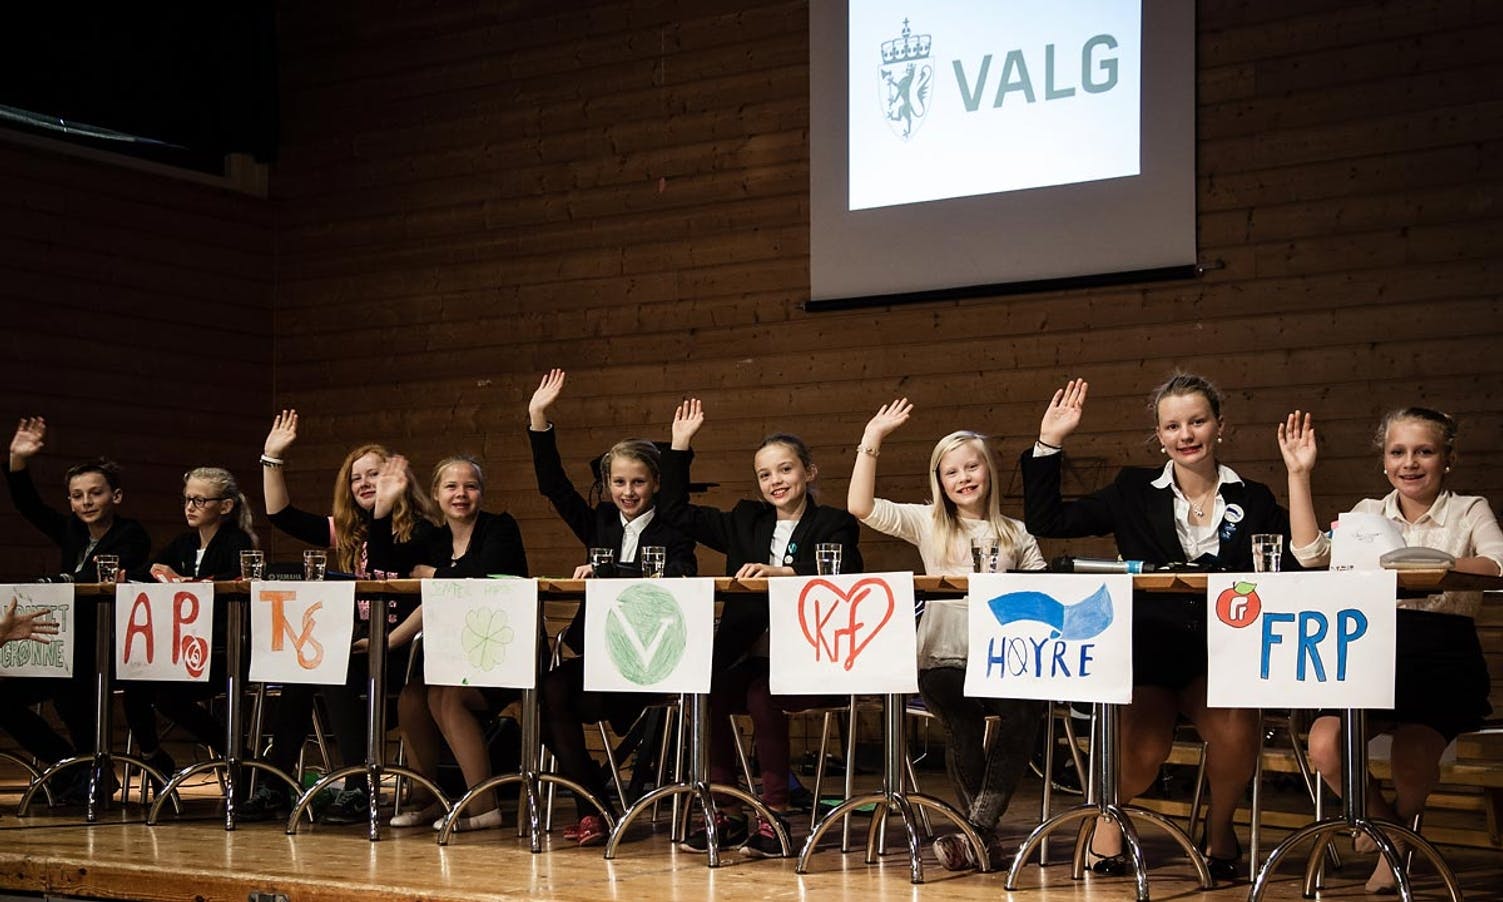 Val 2015 - Nore Neset barneskule. (Foto: Ørjan Håland)